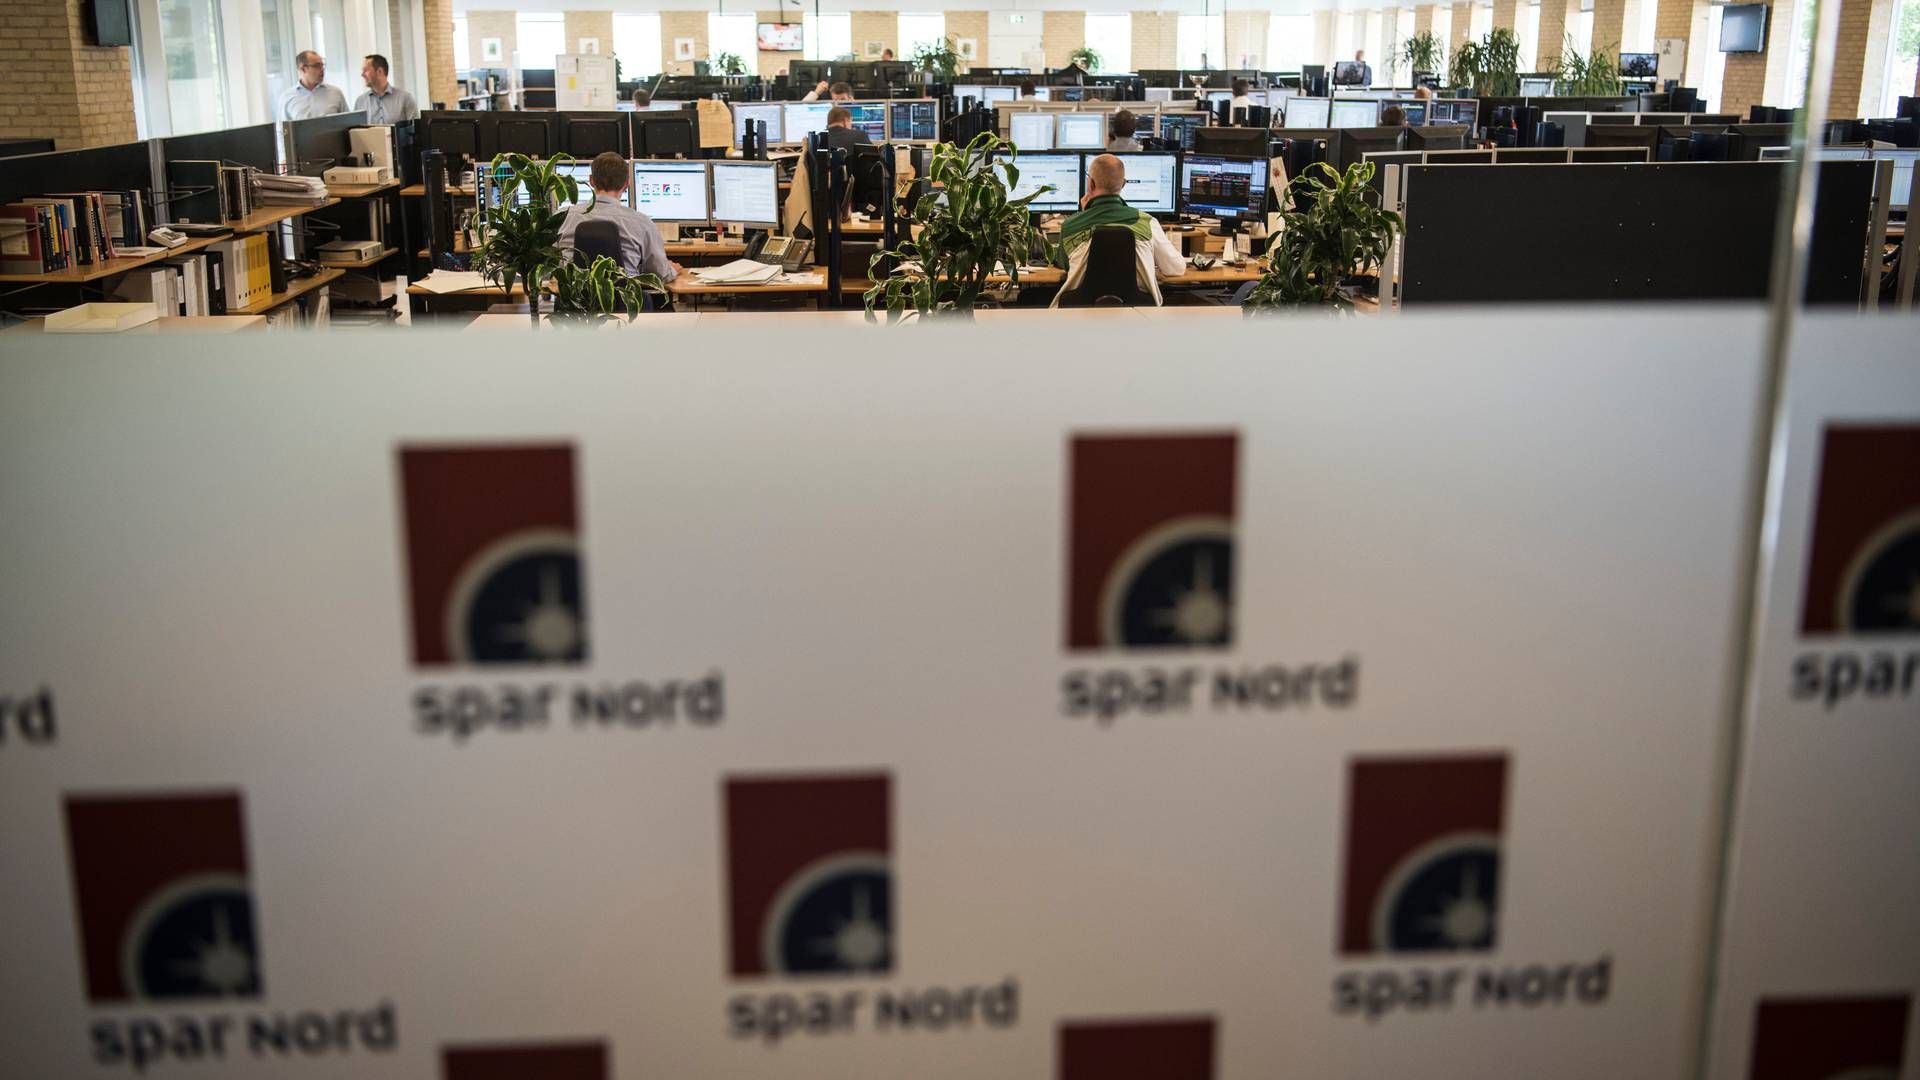 Spar Nord skruer op for erhvervsfokus i ny strategi, og det betyder, at banken har etableret to nye storkundeafdelinger. | Foto: Jan Dagø/Jyllands-Posten/Ritzau Scanpix